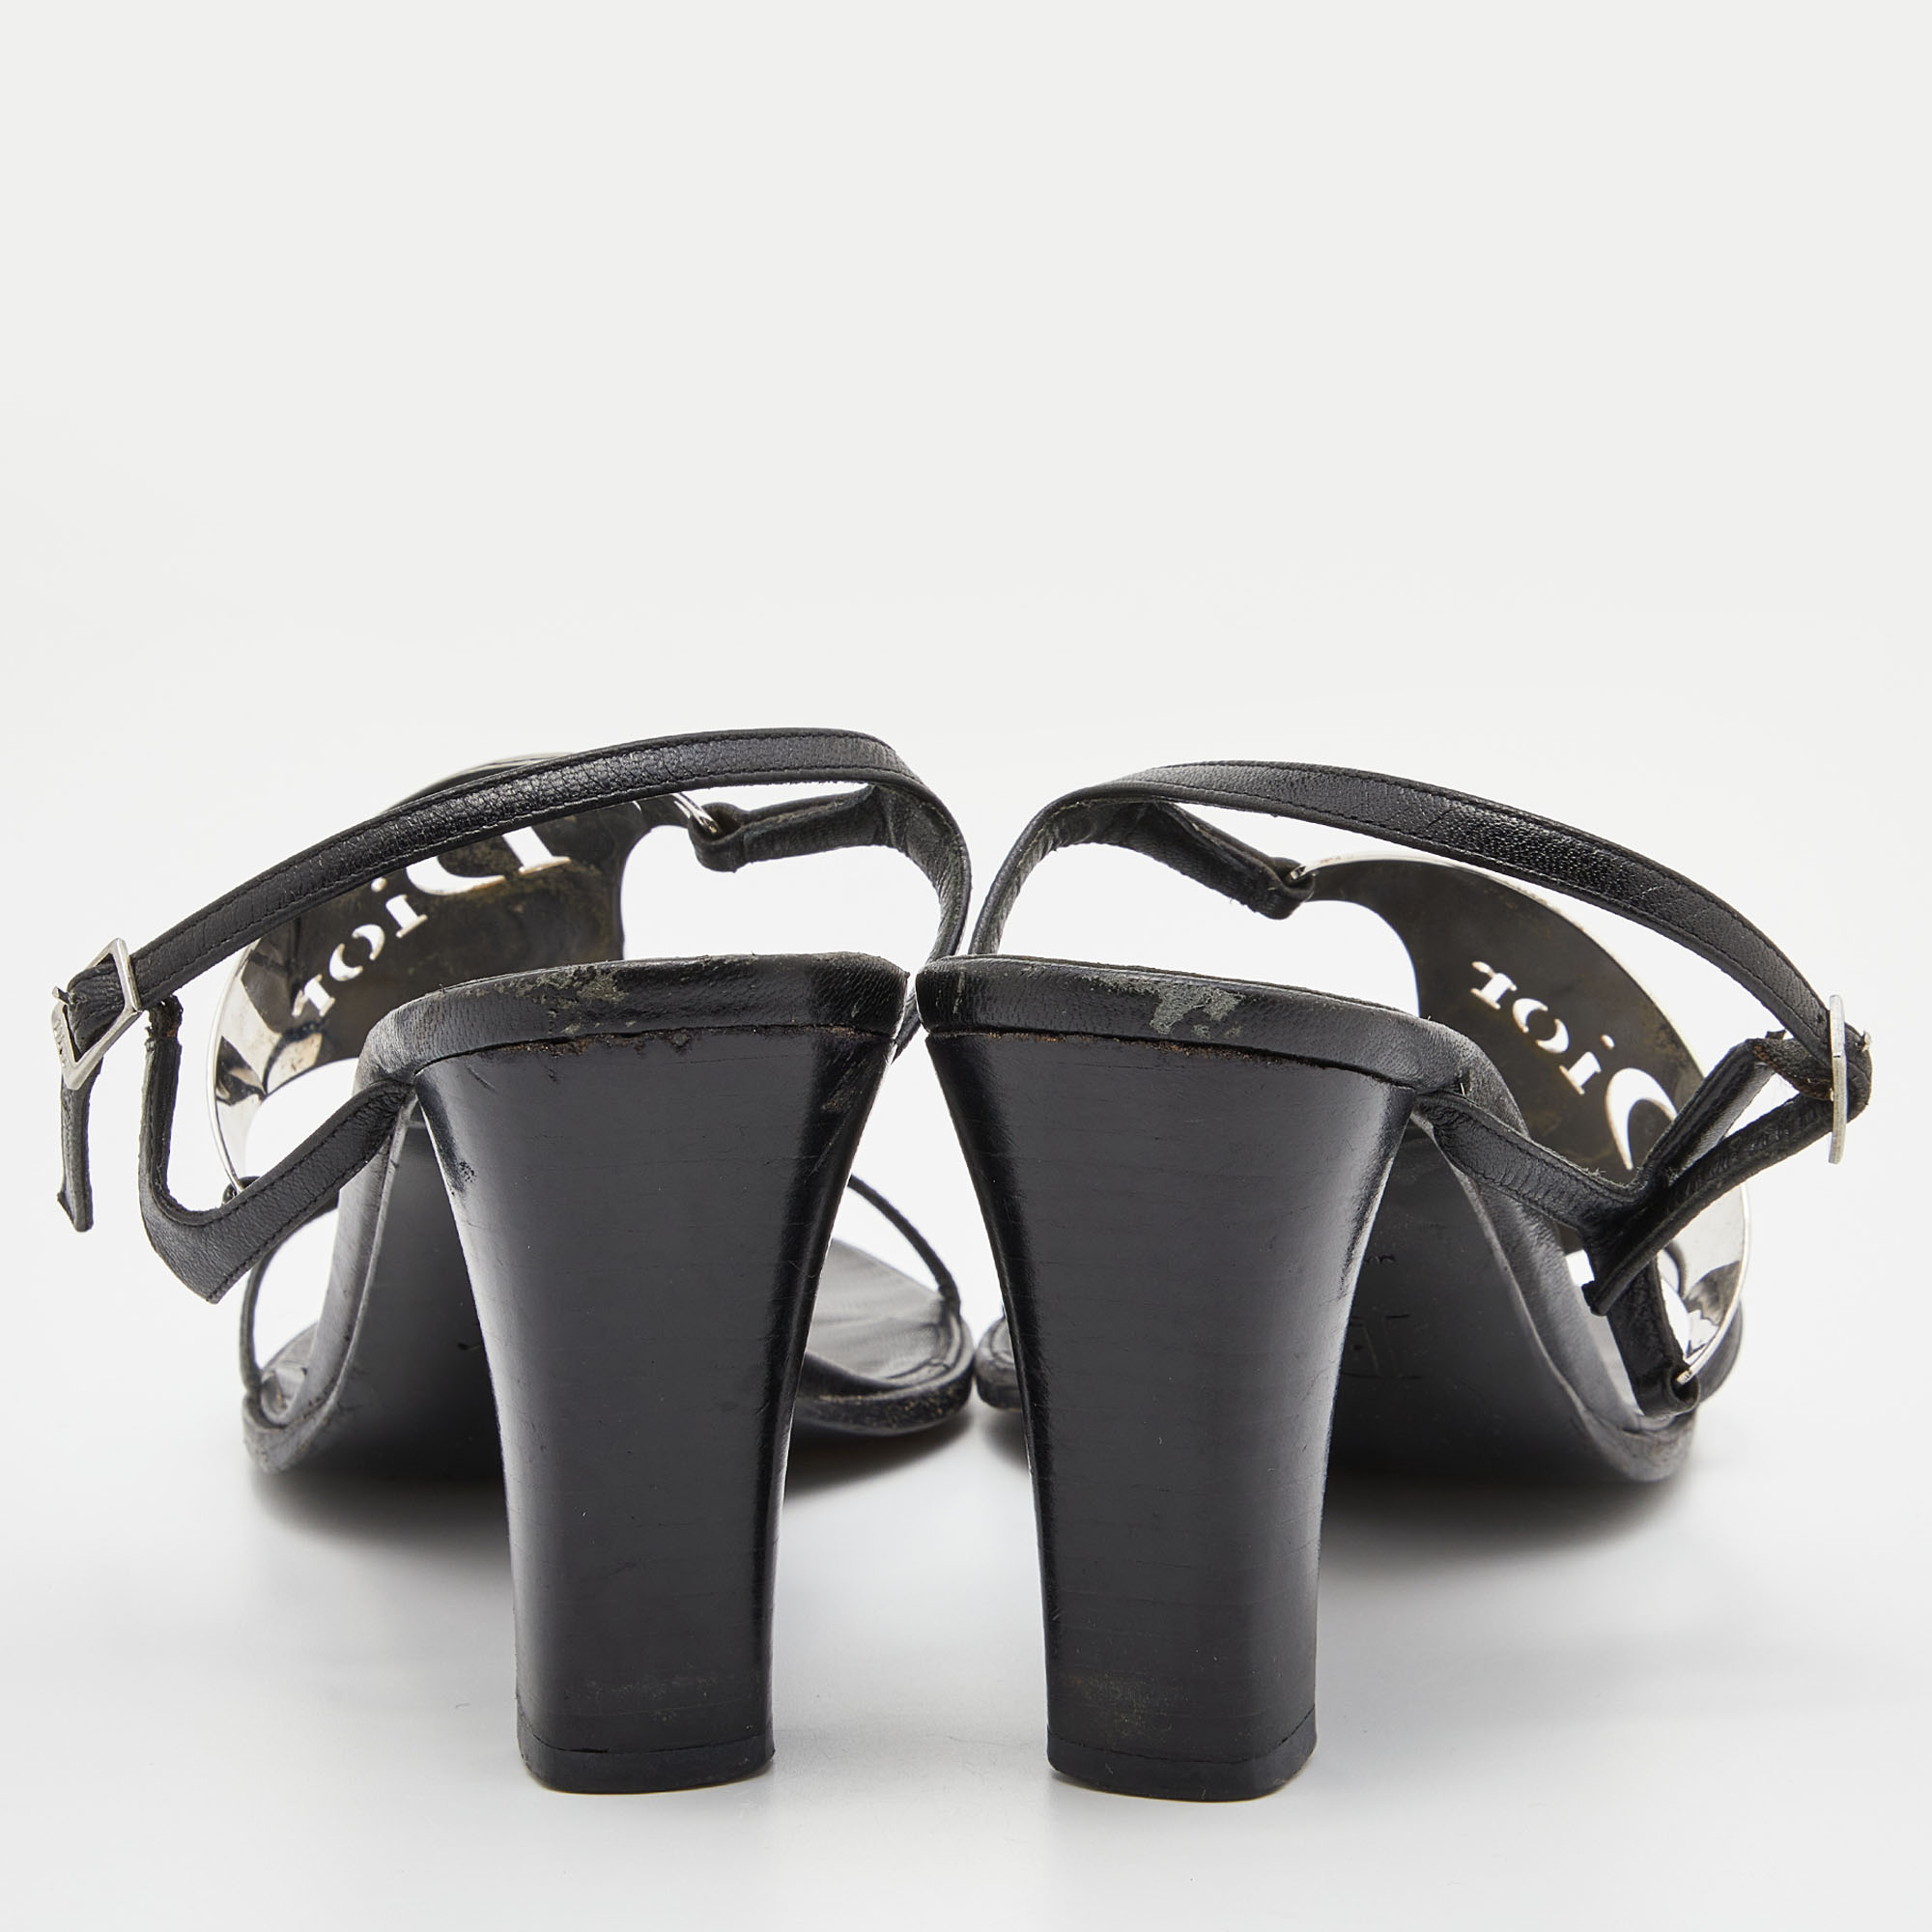 Dior Black Leather Metal Embellished Ankle Strap Sandals Size 39